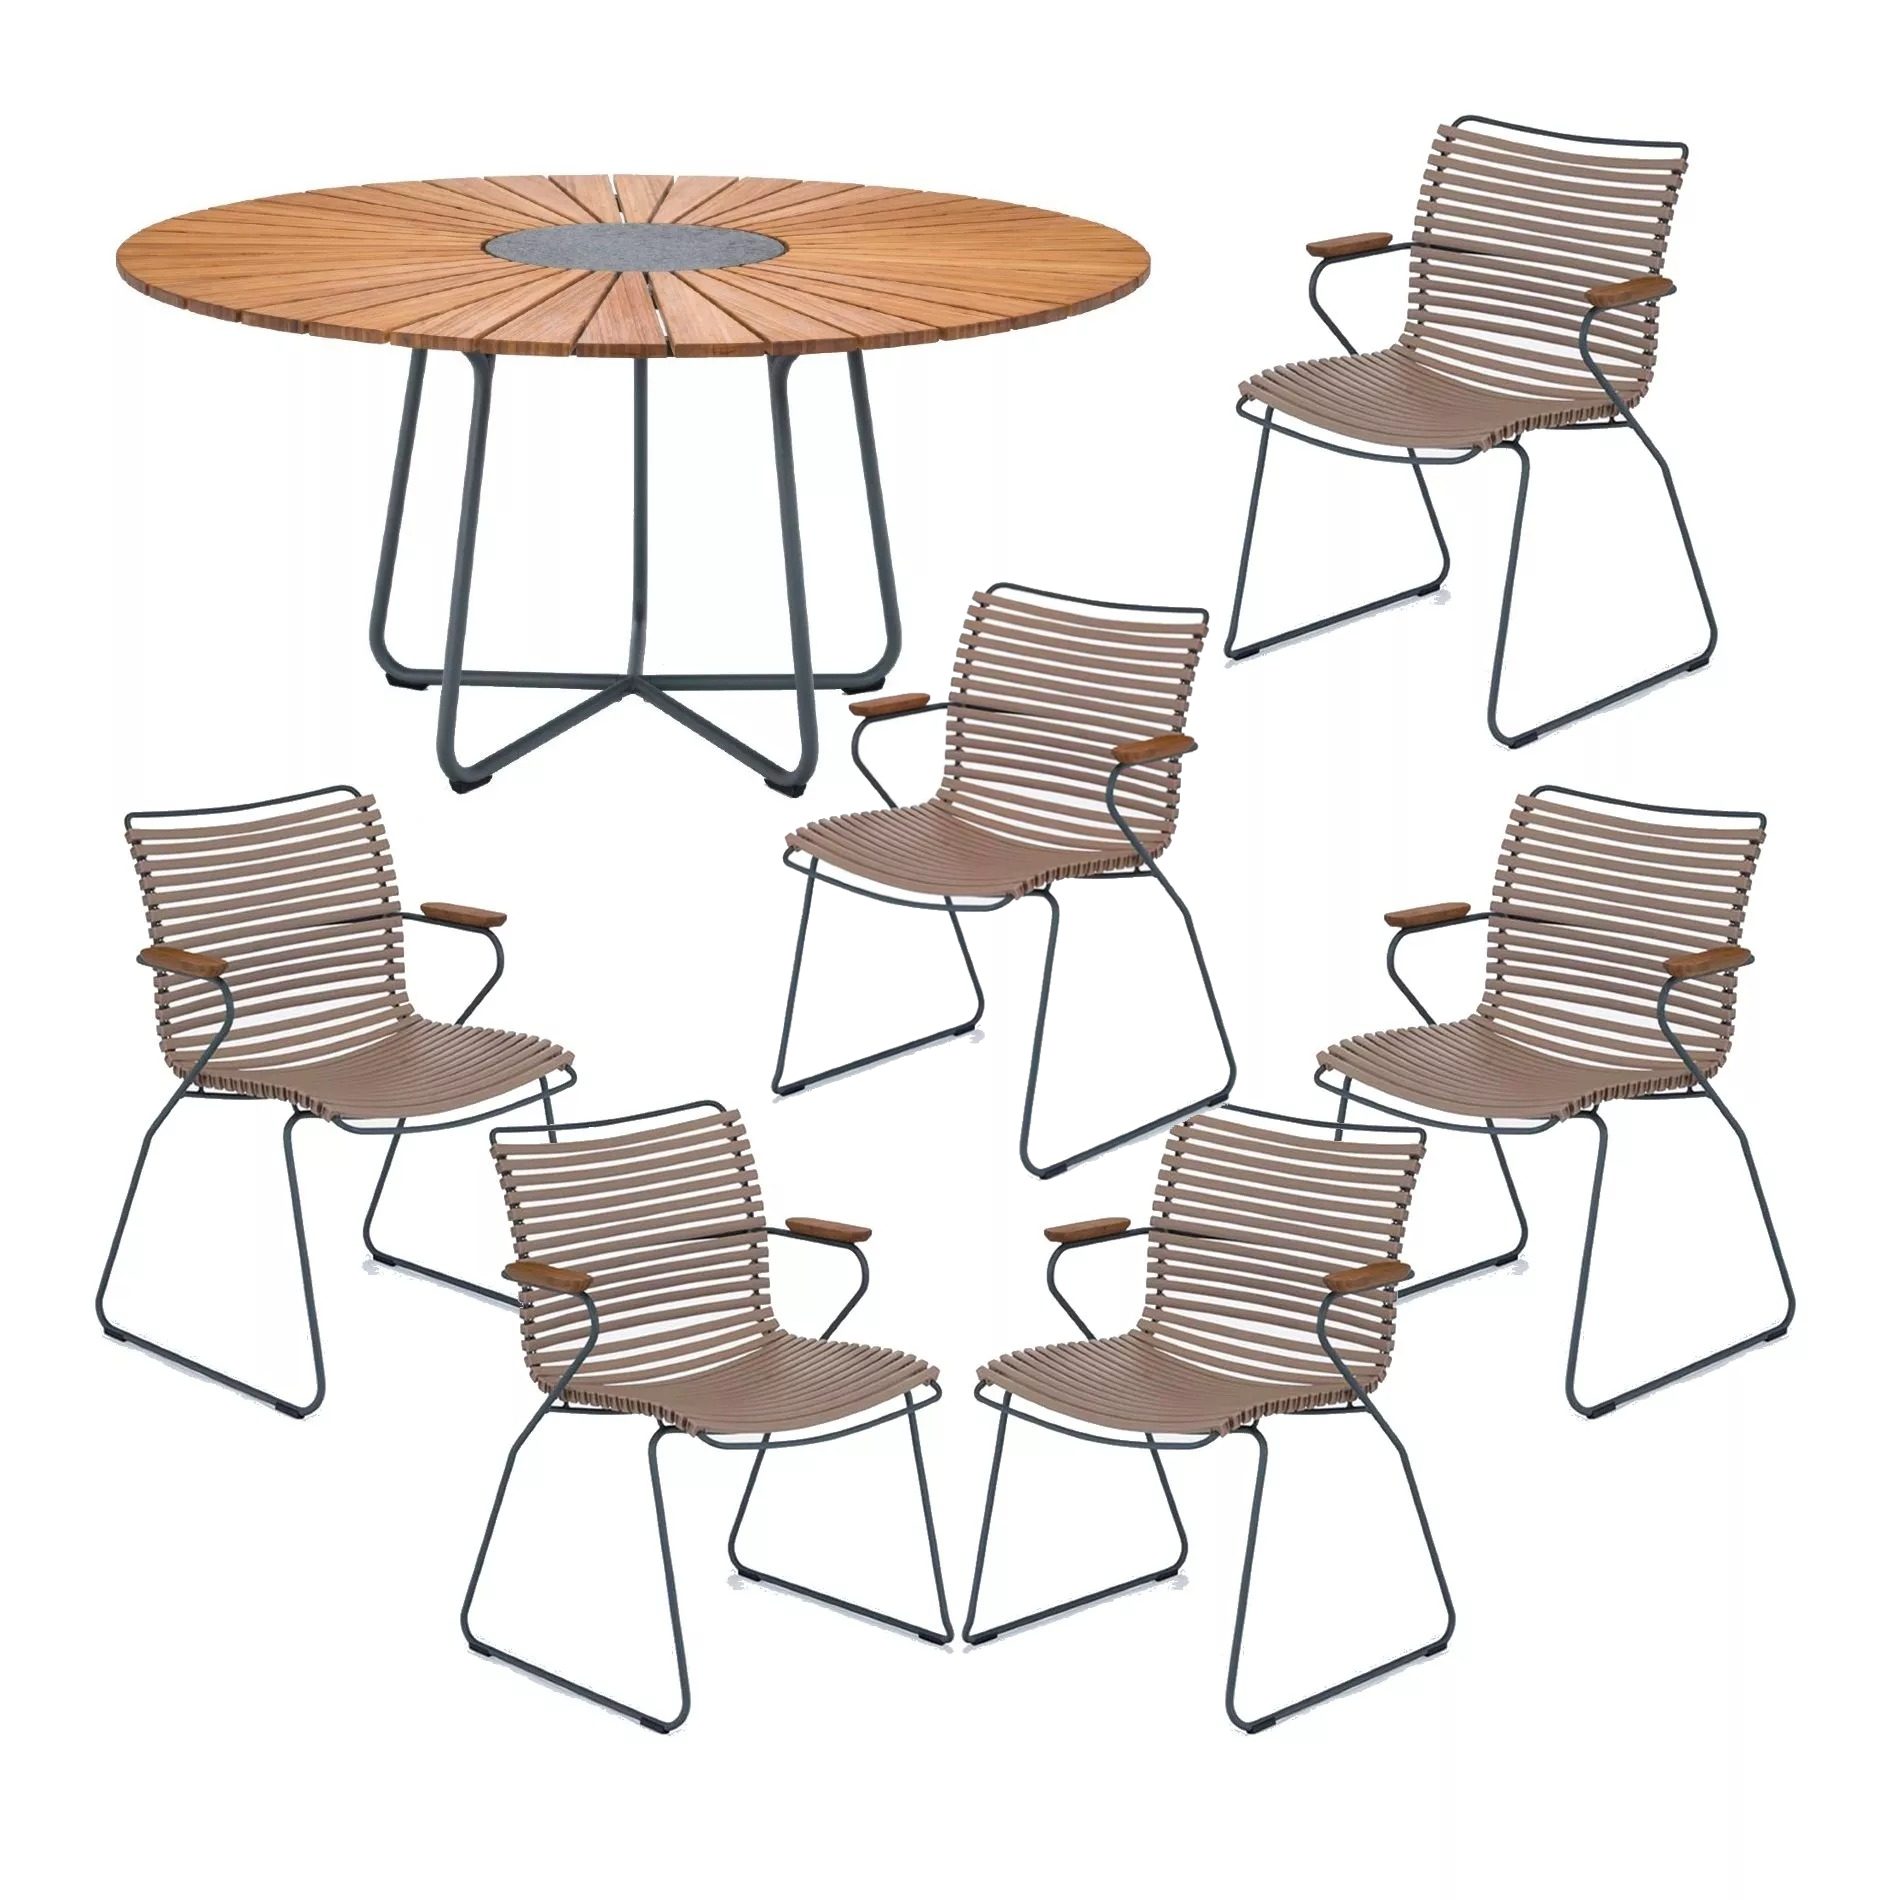 Houe Gartenmöbel-Set mit Tisch "Circle" Ø 150 cm und 6x Stapelsessel "Click", Lamellen sand, Tischplatte Bambus